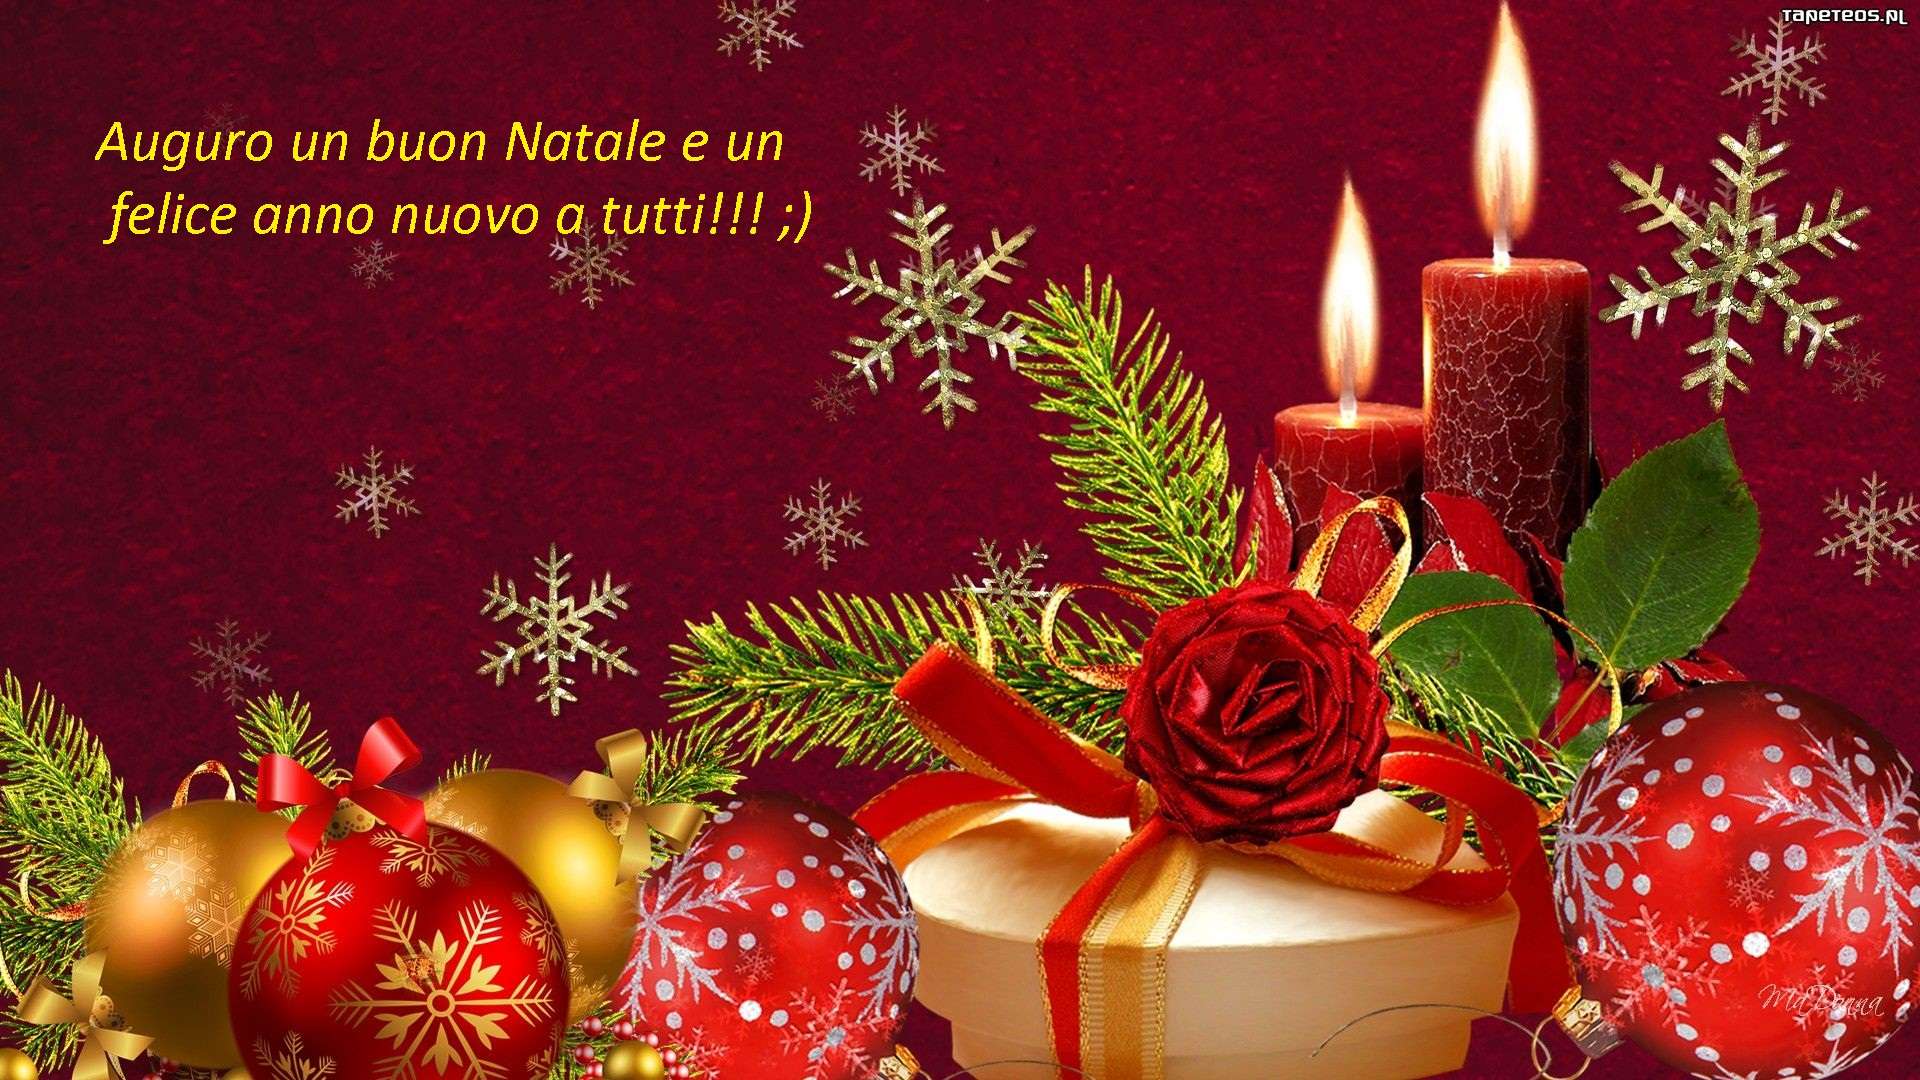 Auguri E Buon Natale.Auguri Di Buon Natale E Felice Anno Nuovo Baronerosso It Forum Modellismo